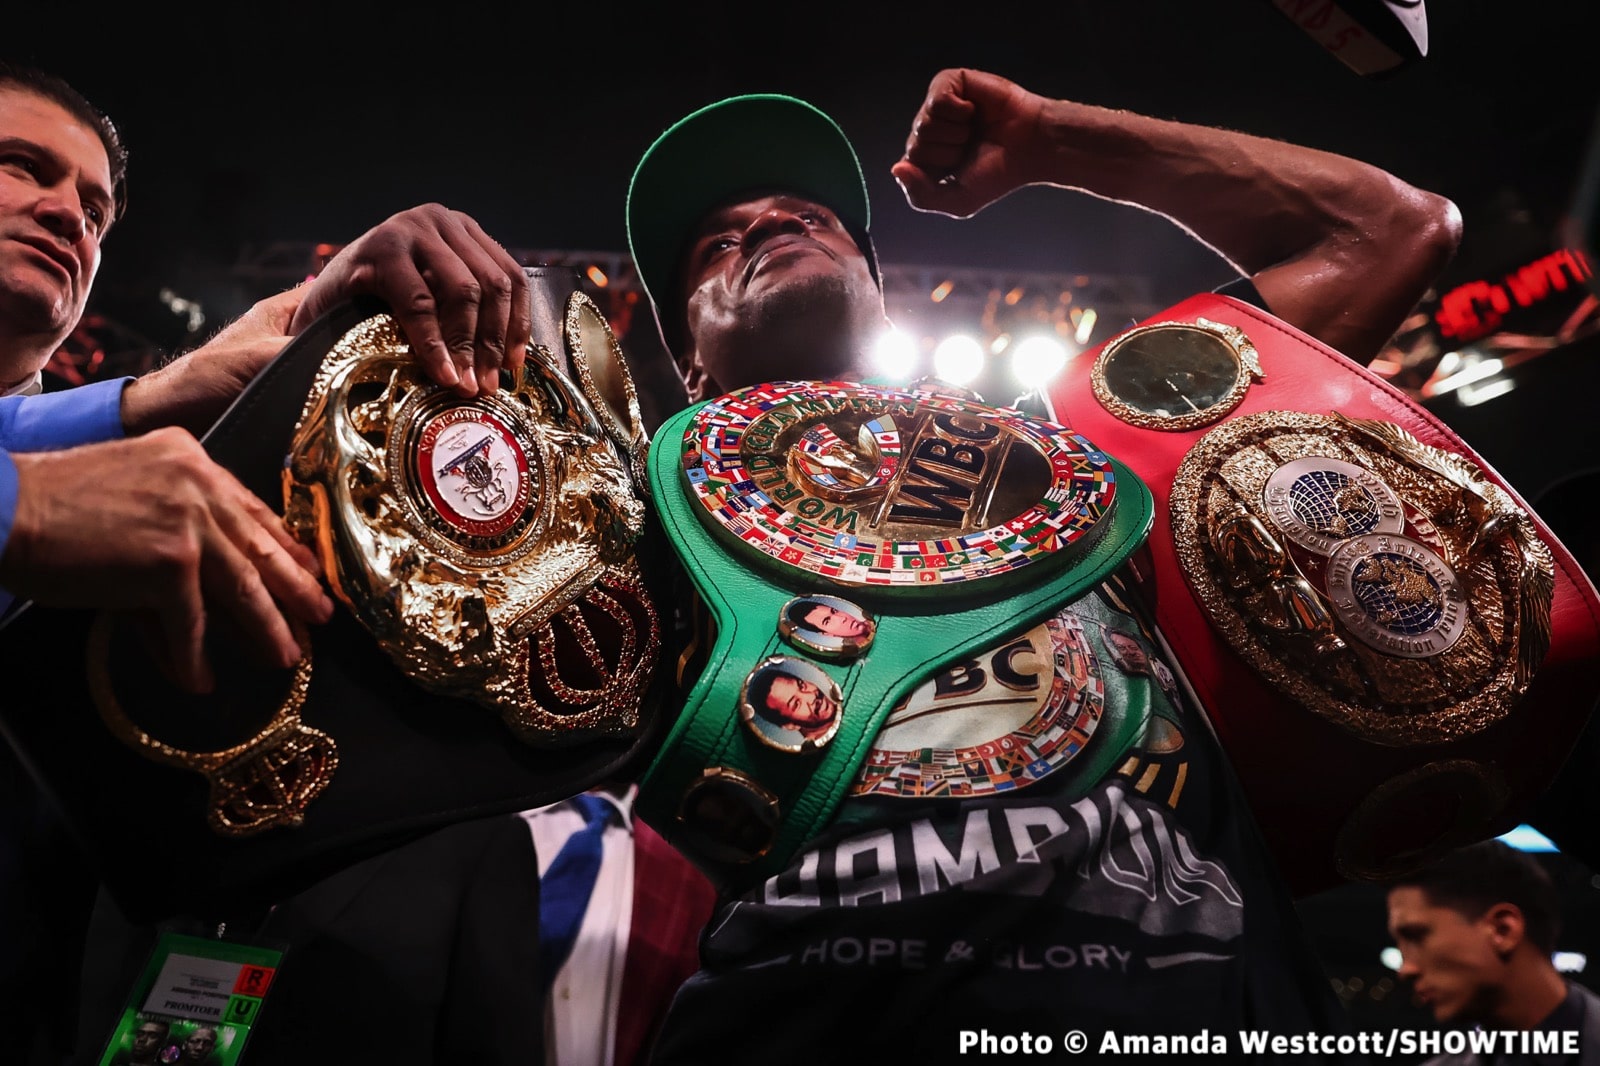 Tyson Fury boxing image / photo